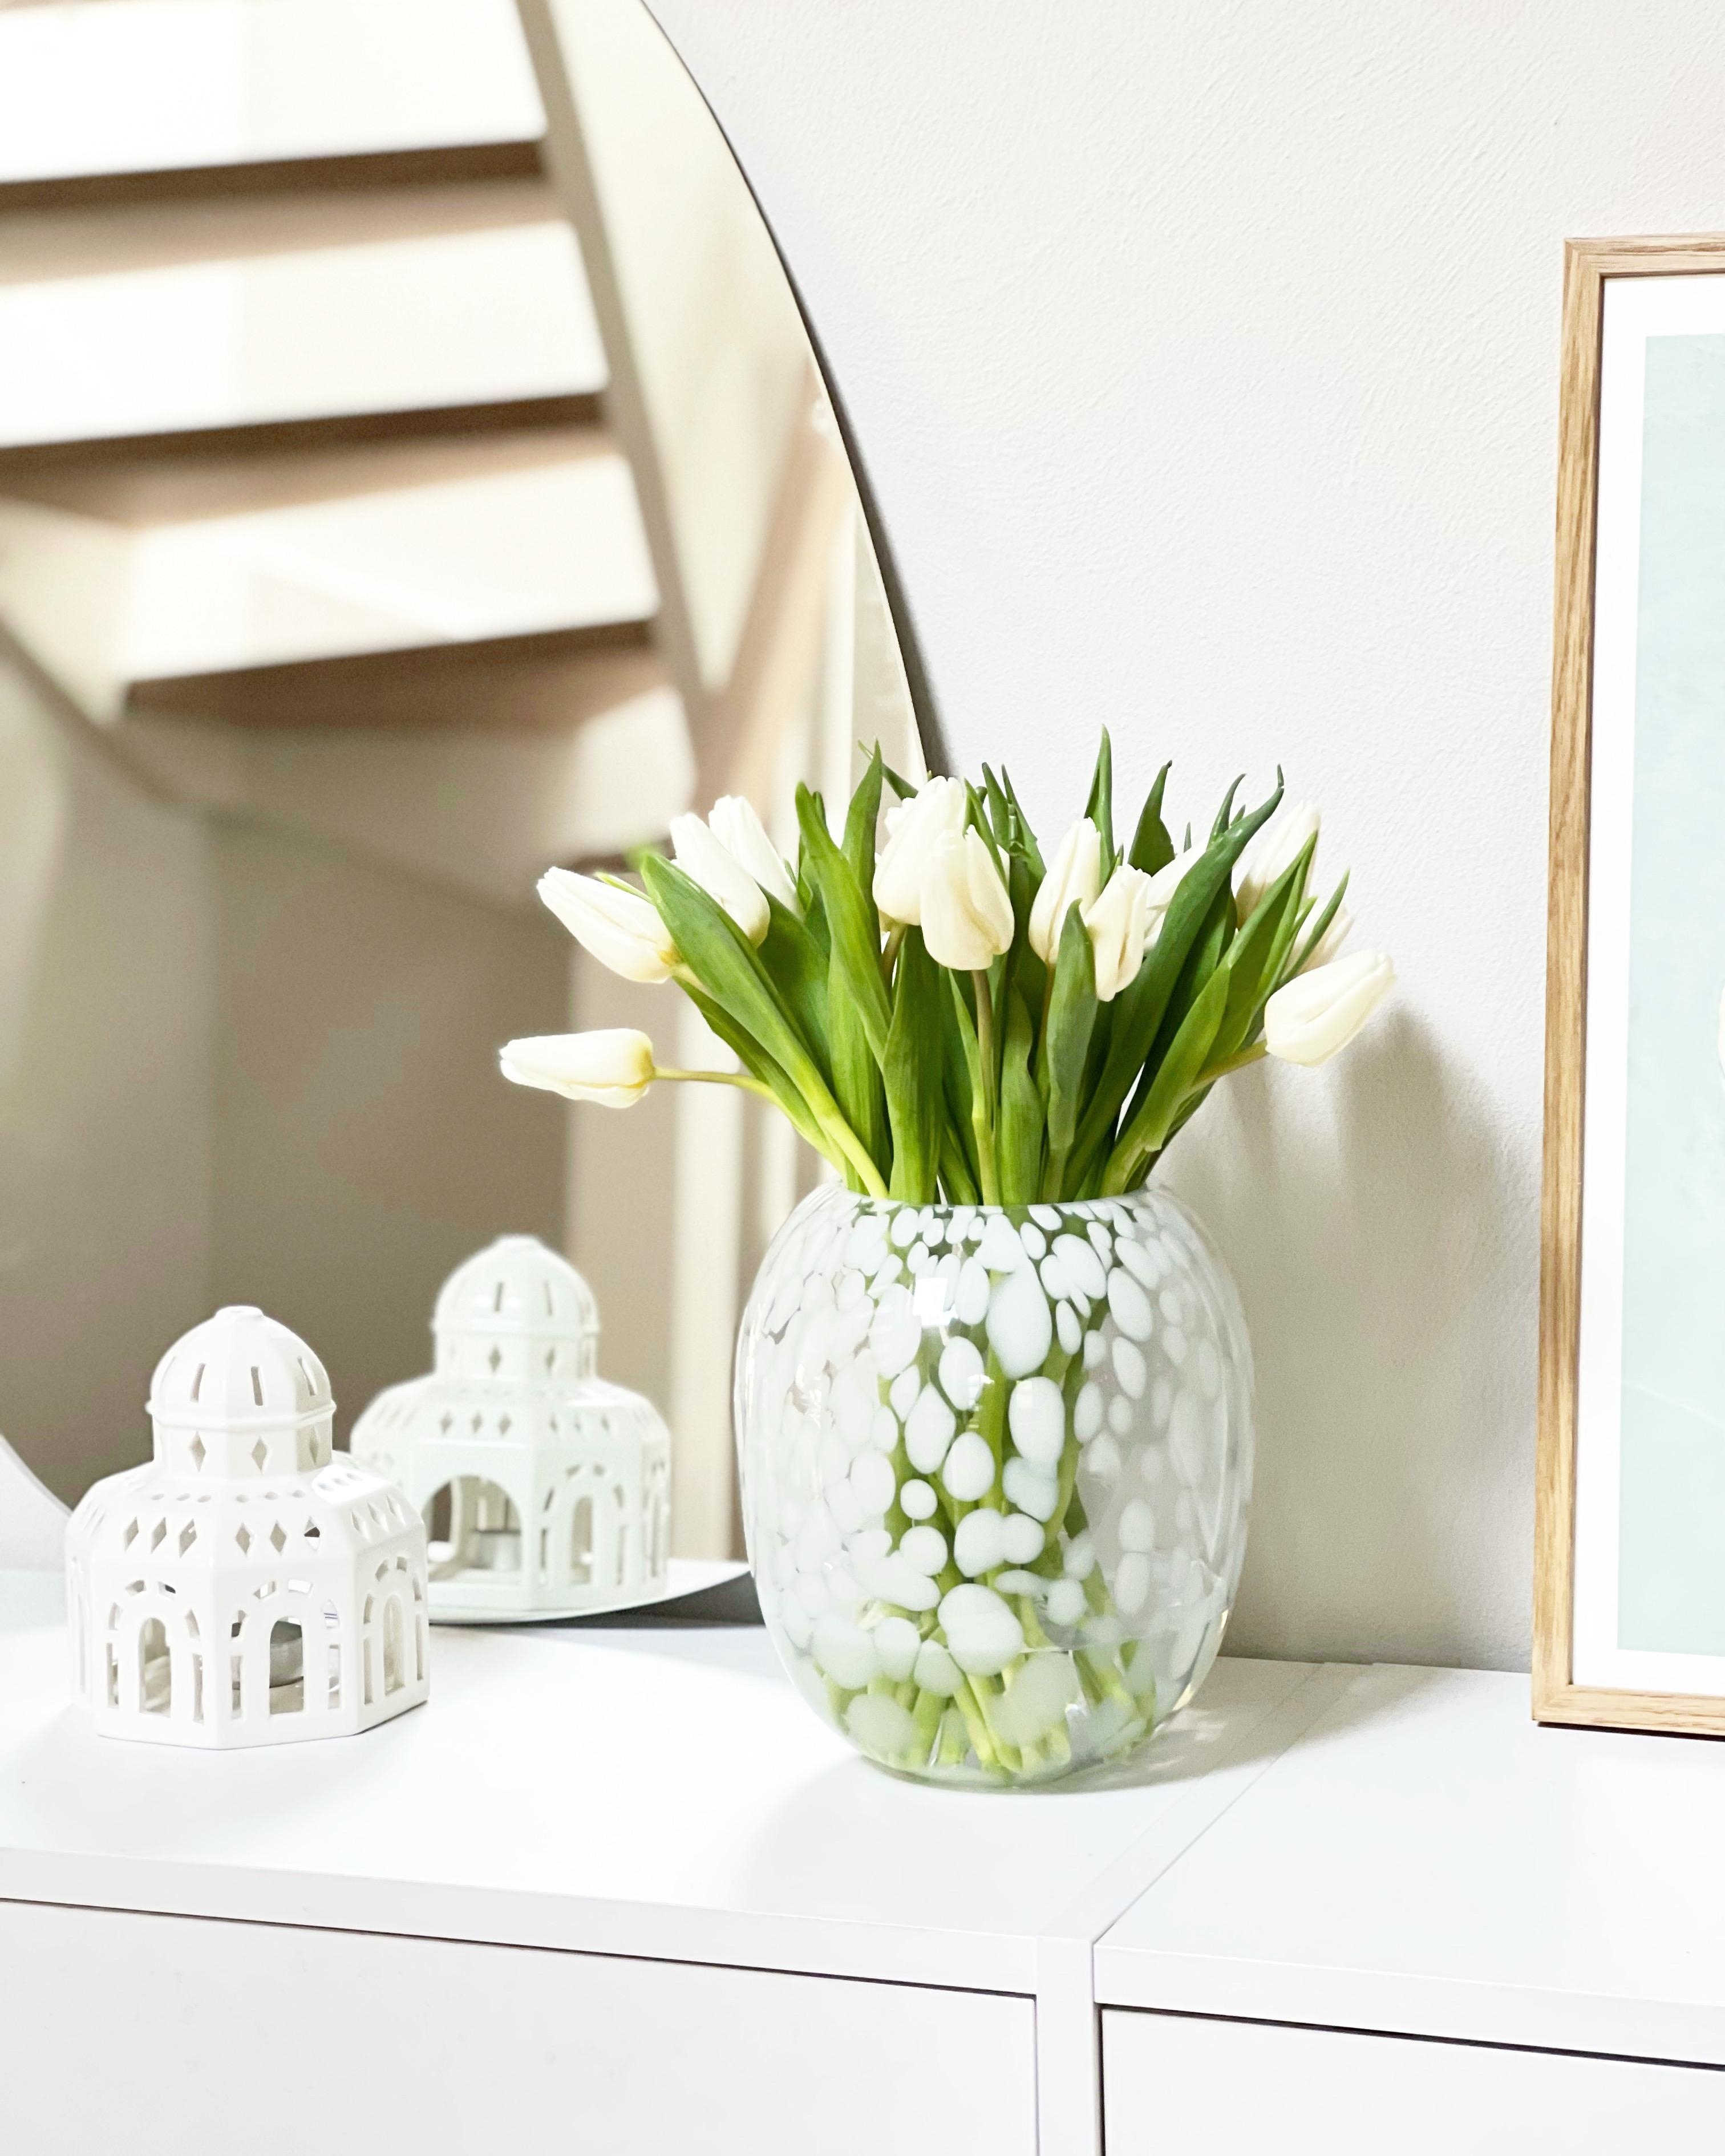 Tulpen gehen immer, oder? #tulpen #blumendeko #flur #sideboard #spiegel #lichthäuser